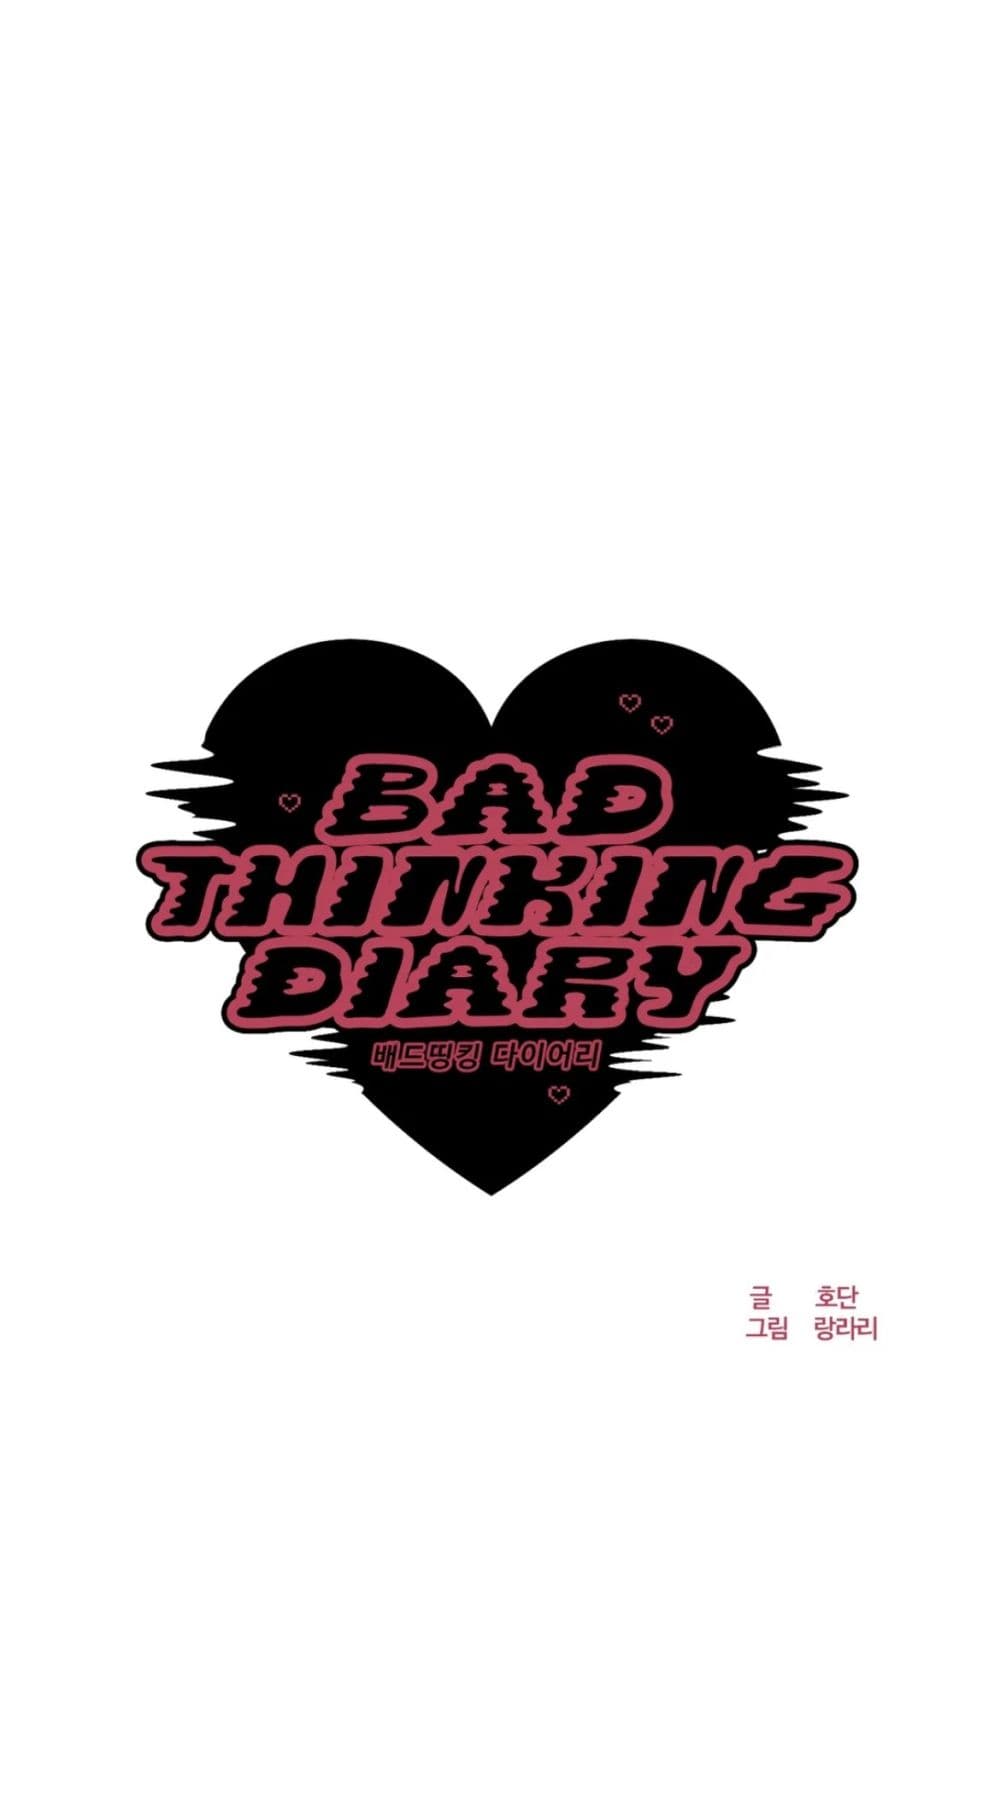 Bad Thinking Dairy 9-9